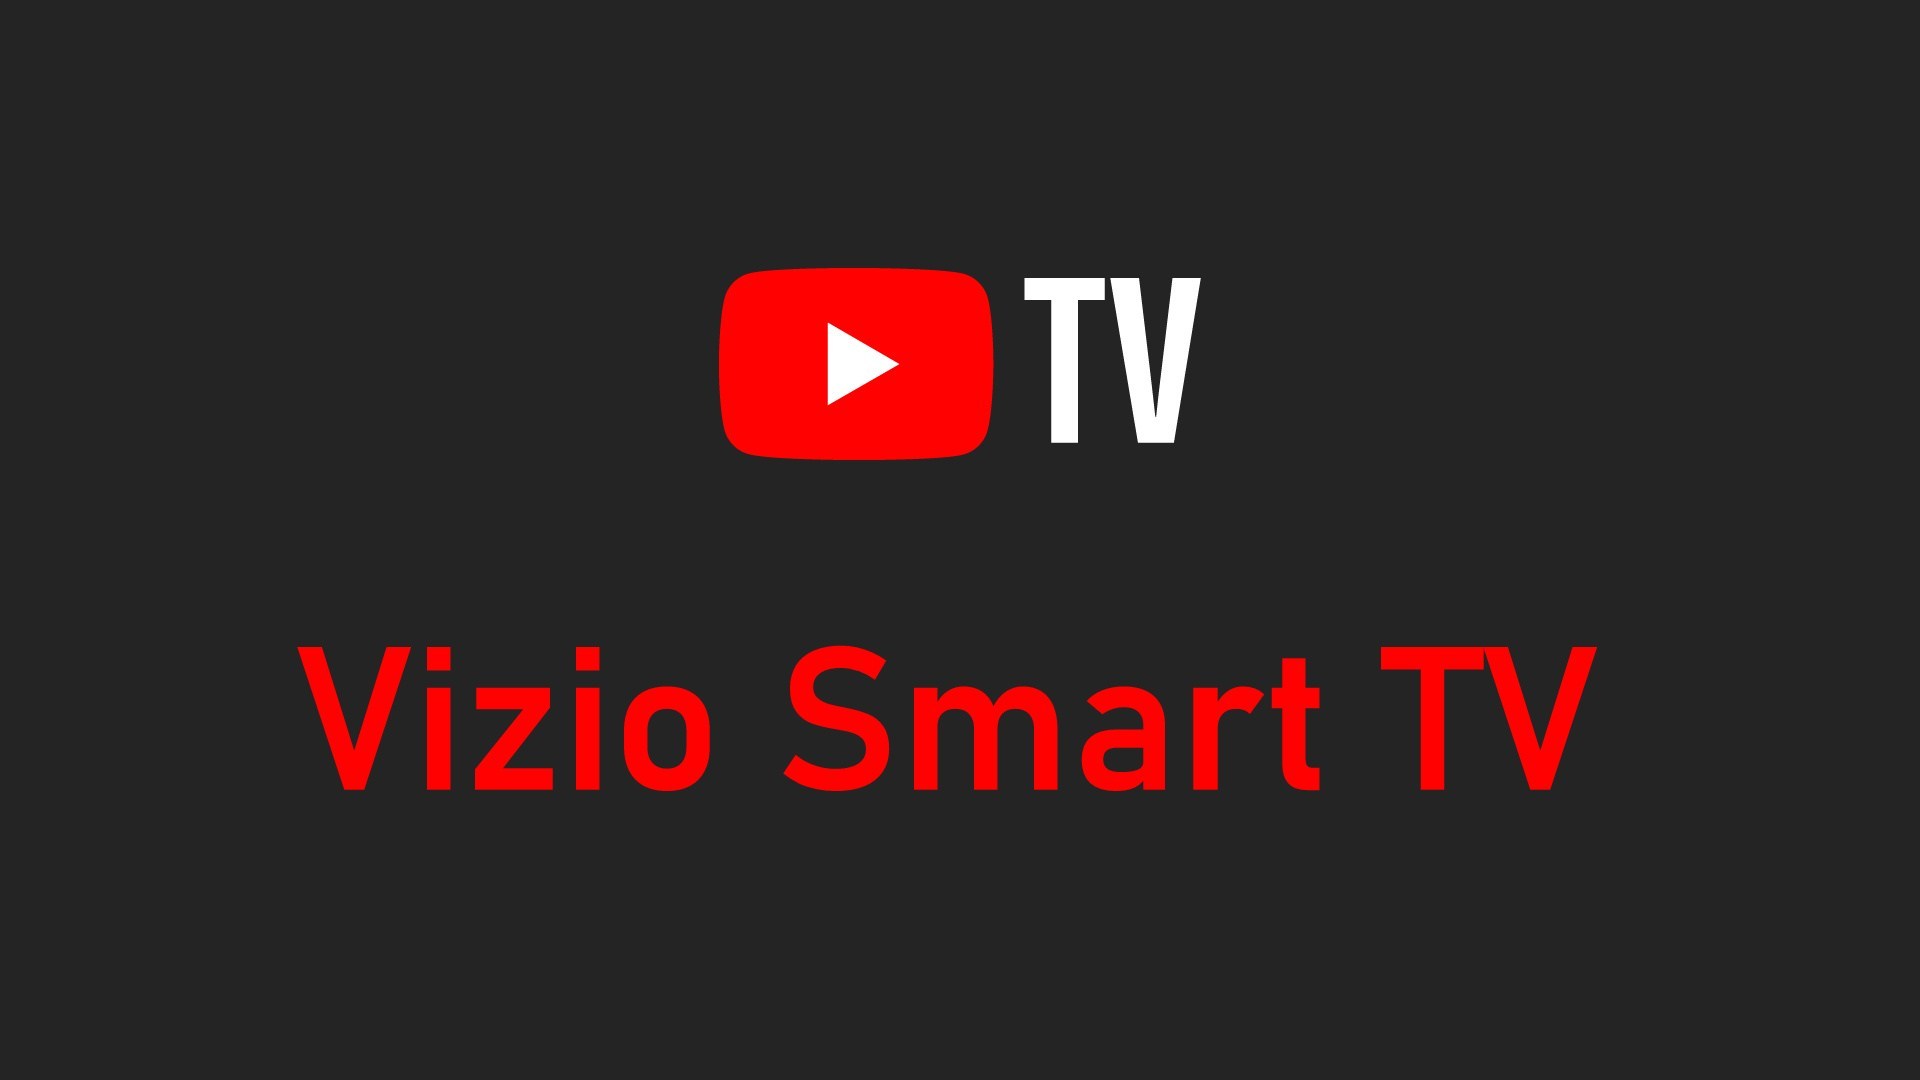 Nola ikusi YouTube Telebista VIZIO Smart TV-n
